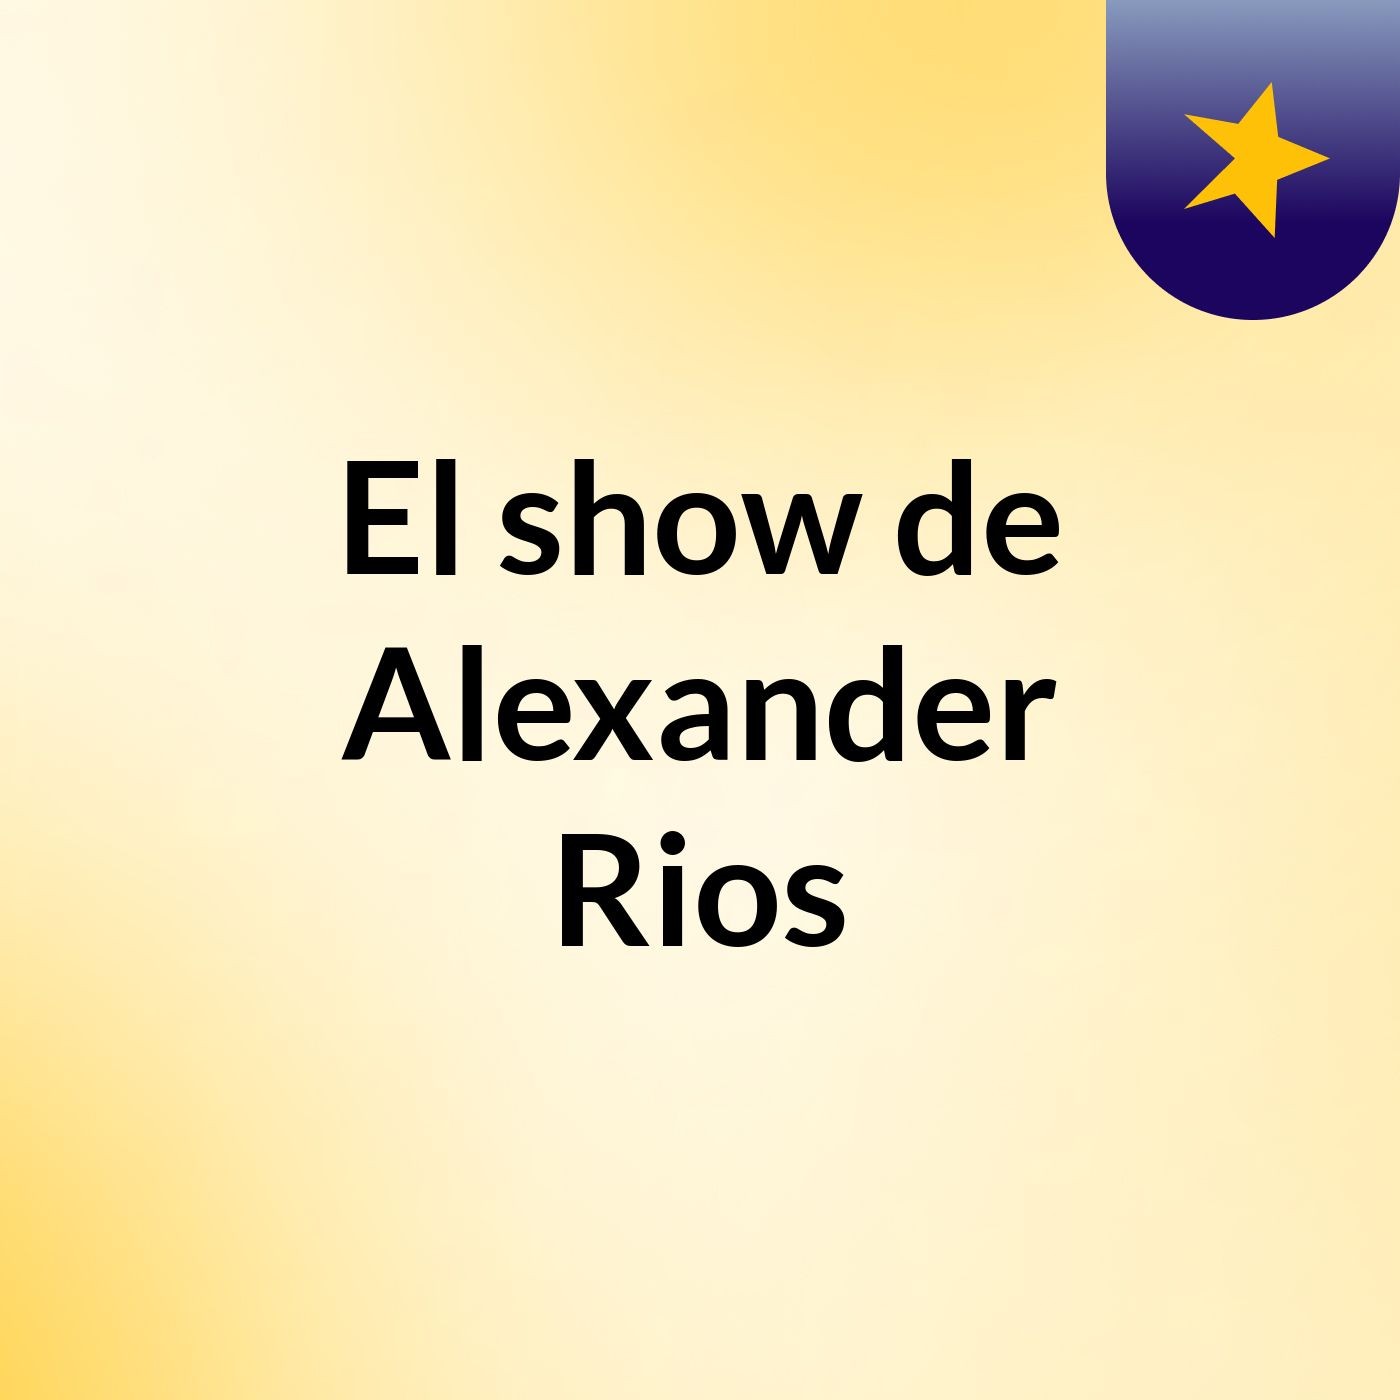 El show de Alexander Rios